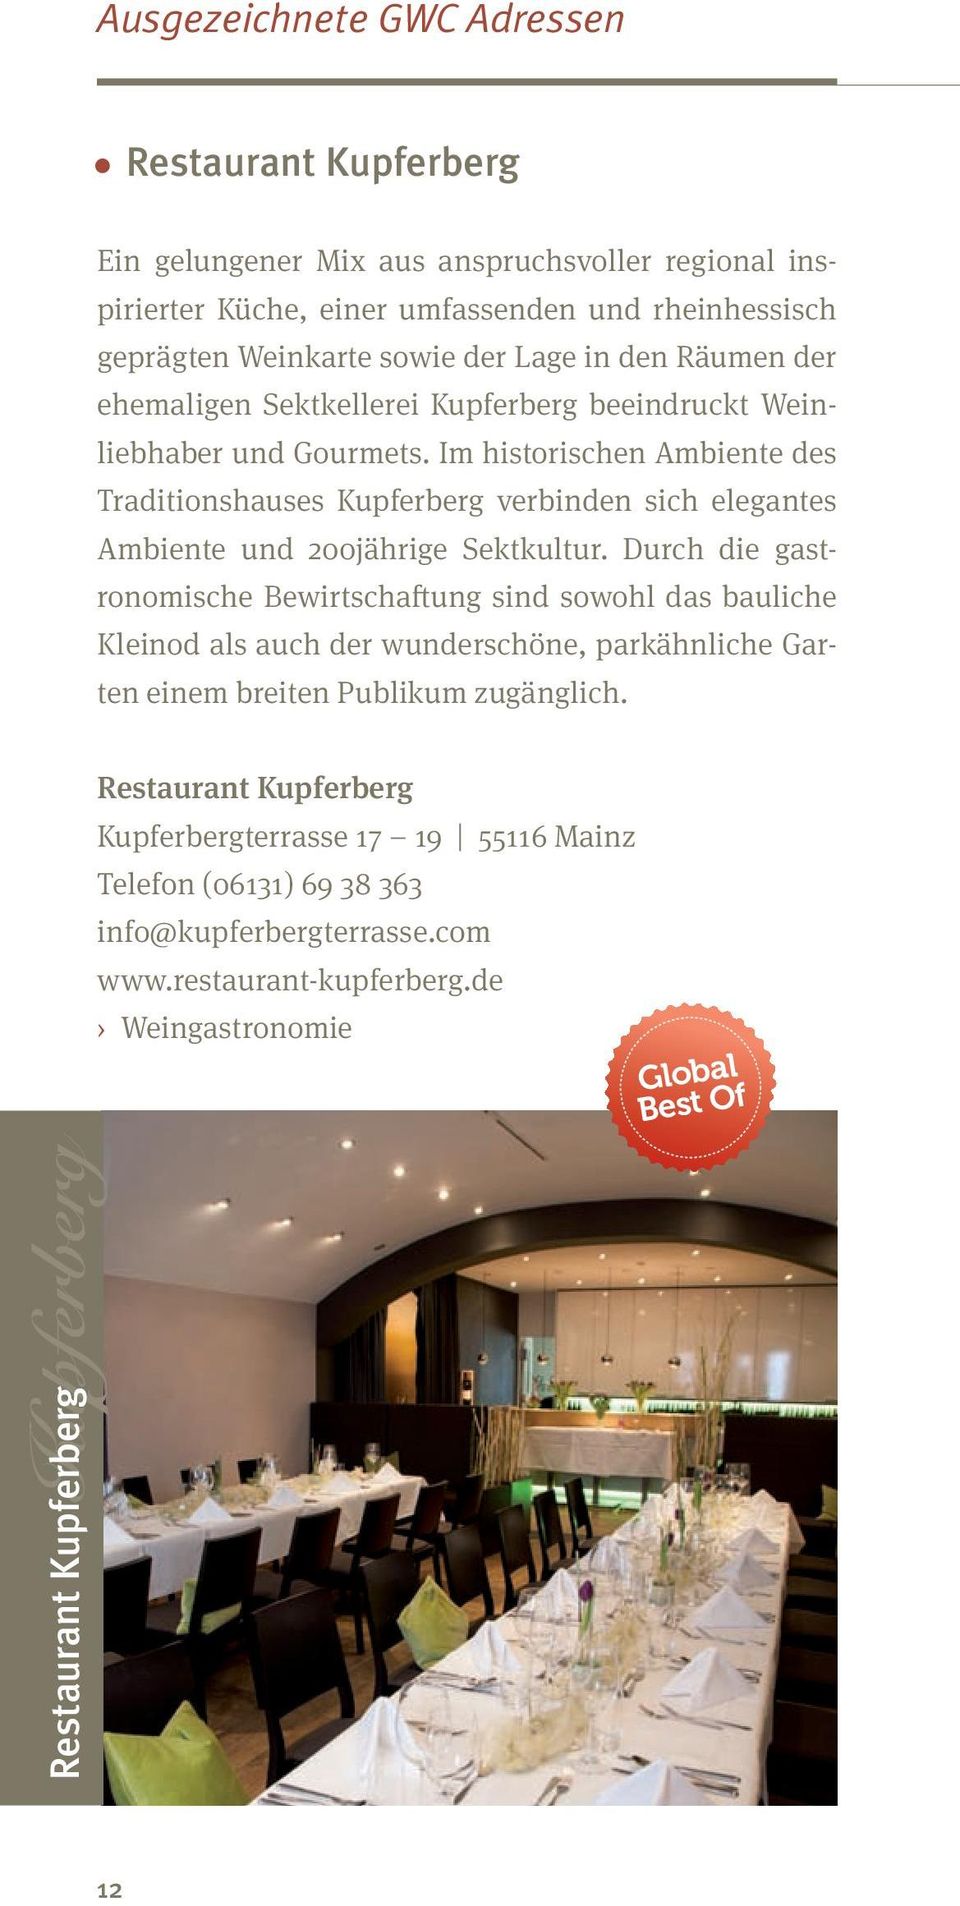 Im historischen Ambiente des Traditionshauses Kupferberg verbinden sich elegantes Ambiente und 200jährige Sektkultur.